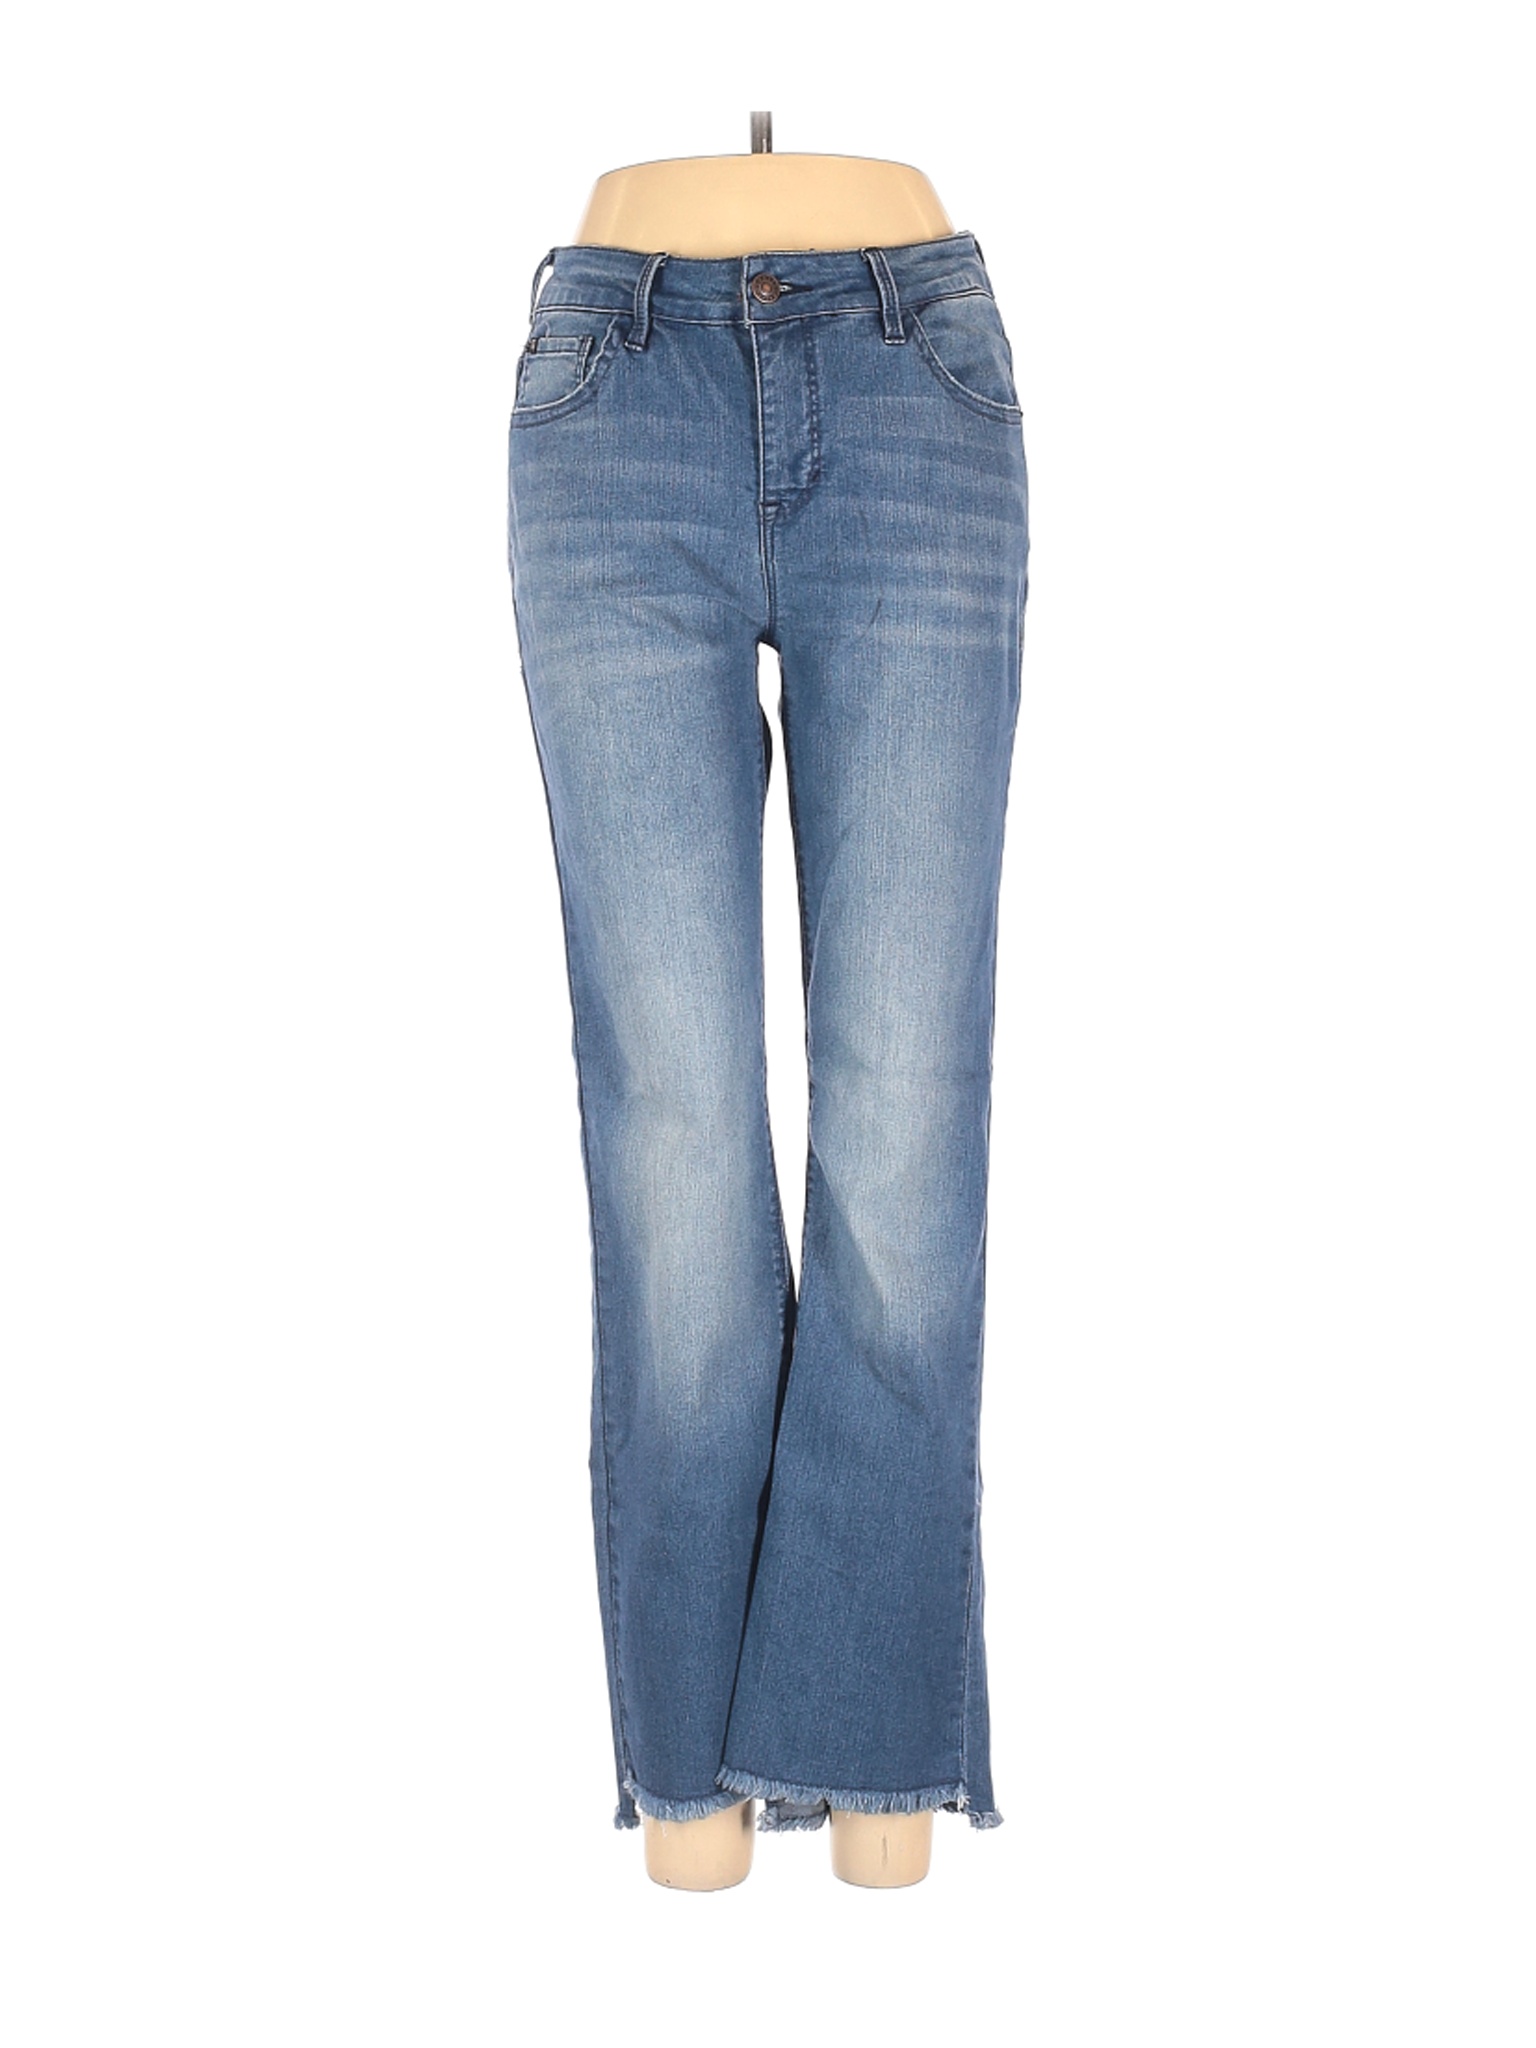 Curve Appeal Women Blue Jeans 27W | eBay